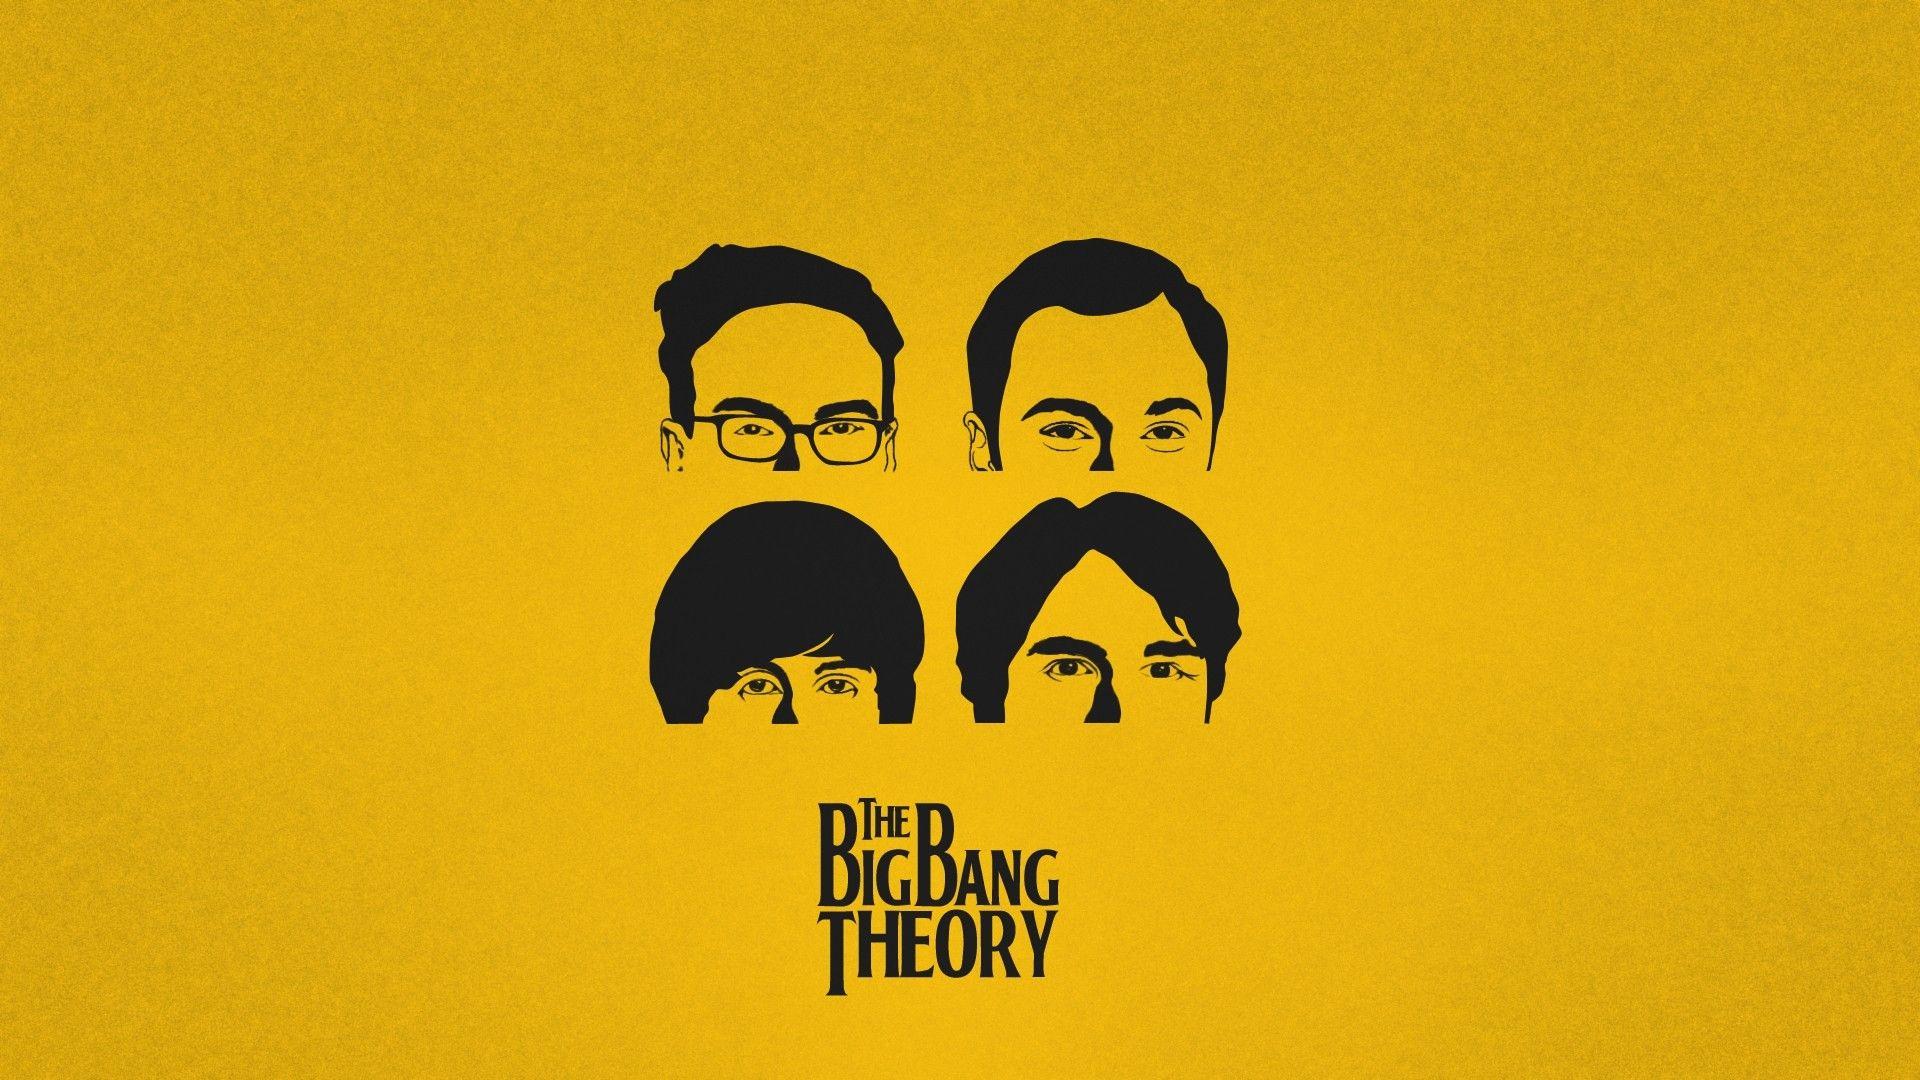 The Big Bang Theory Wallpapers - Wallpaper Cave